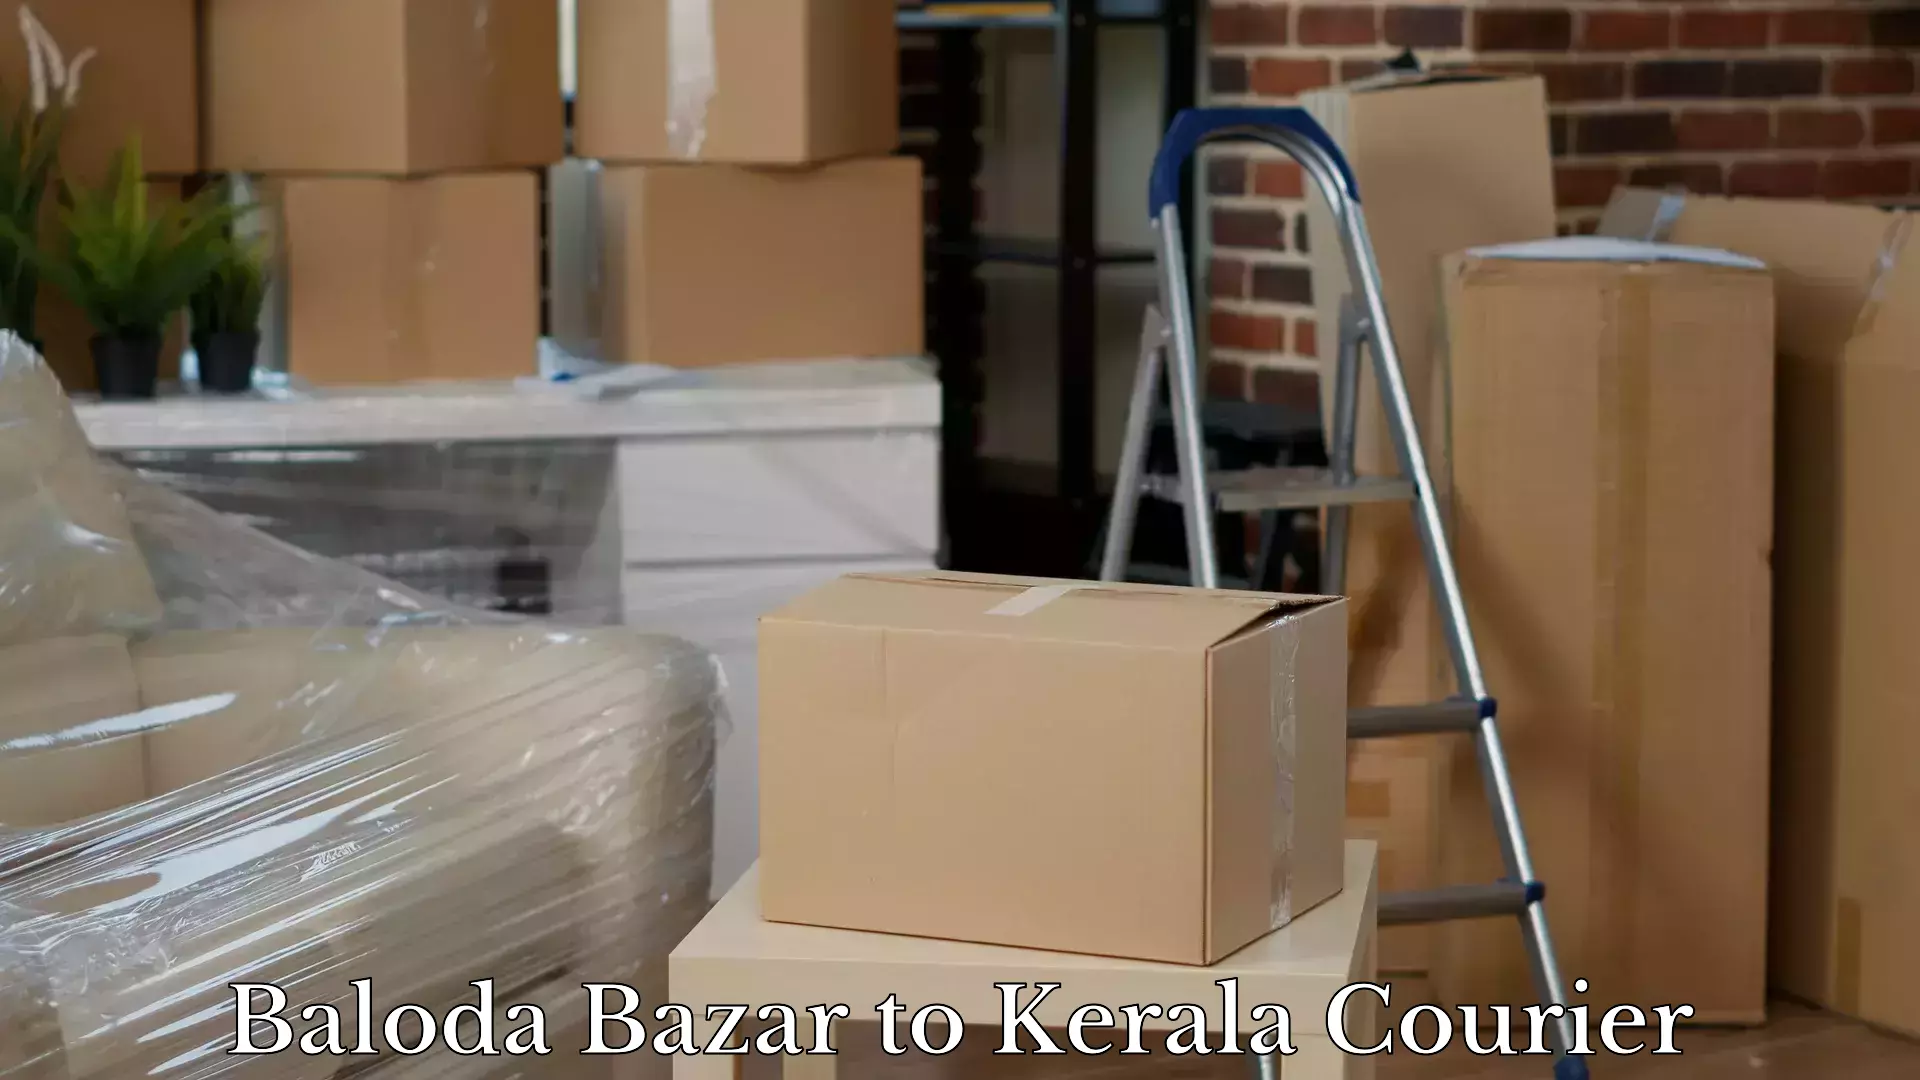 Baggage relocation service Baloda Bazar to Adoor